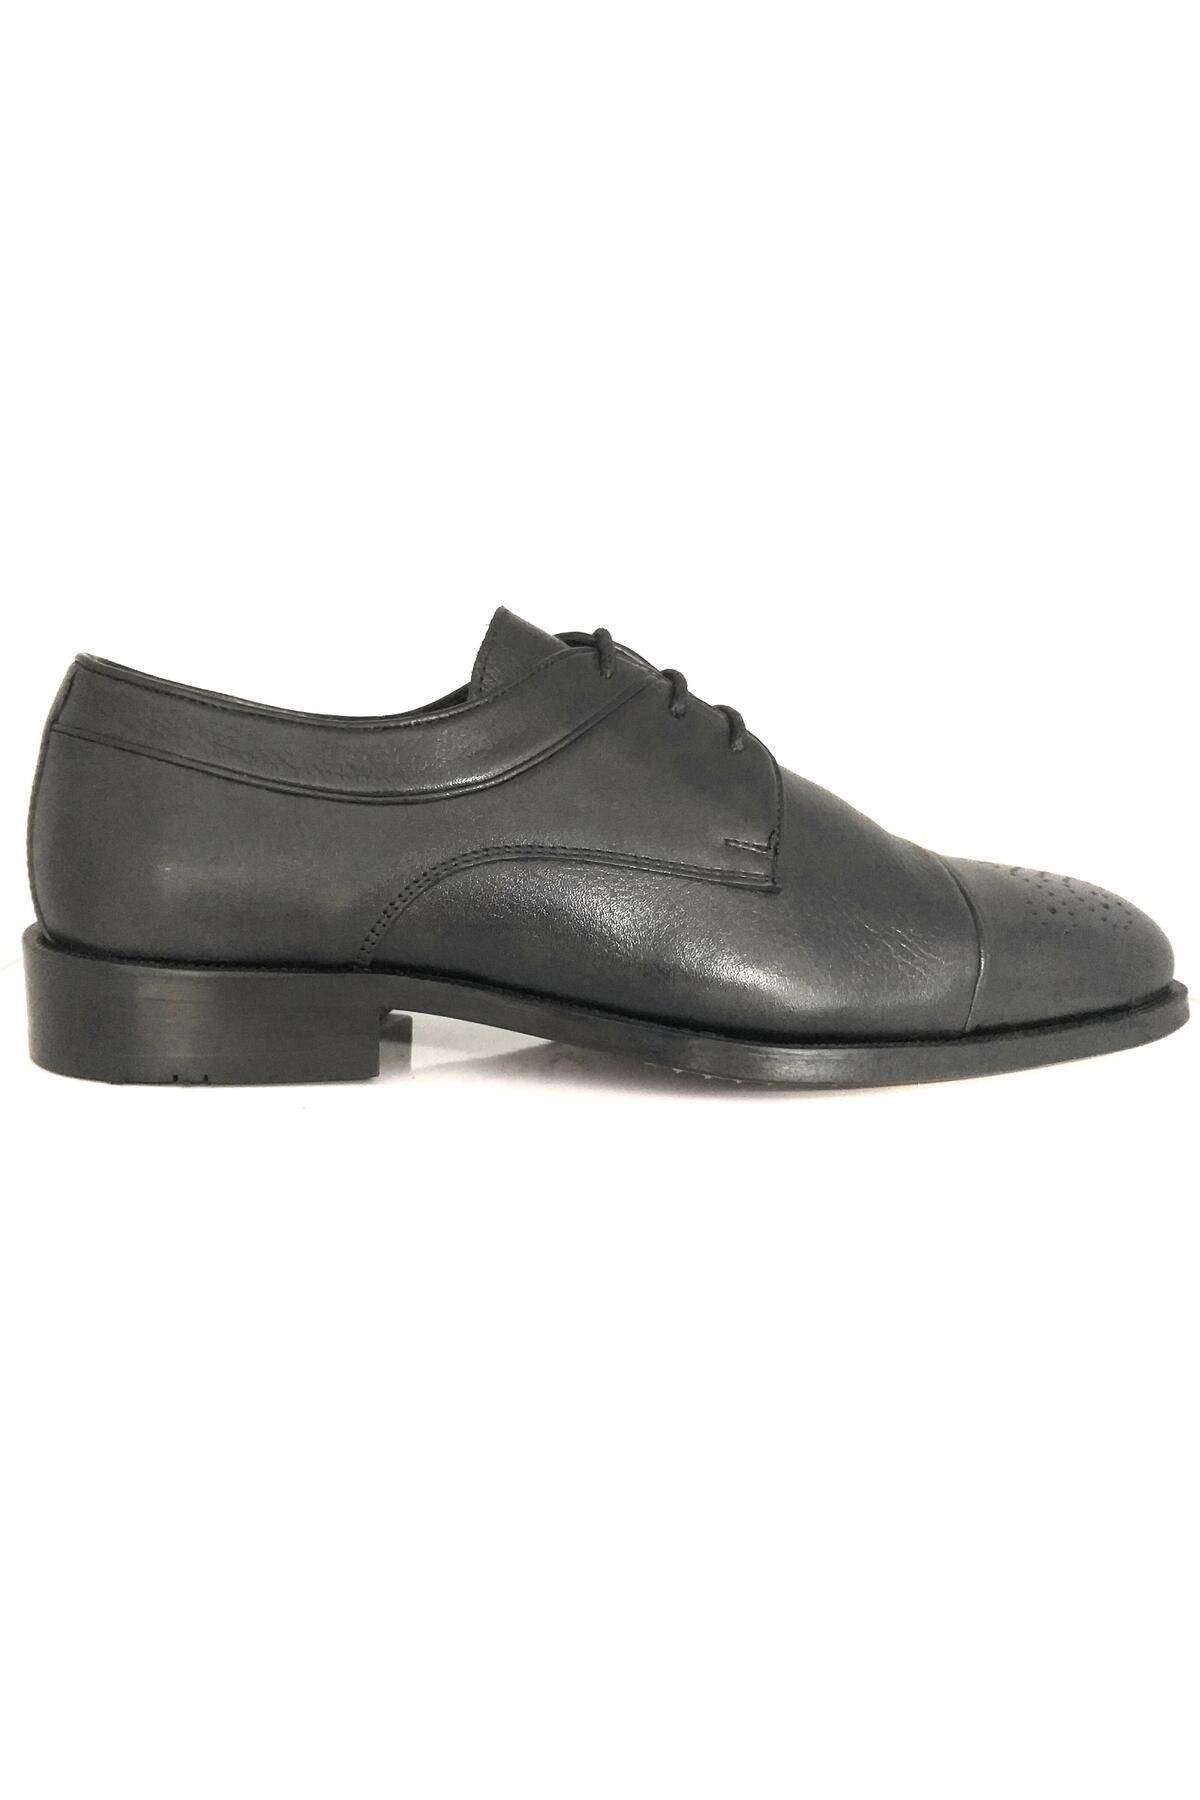 DANACI 9643 Erkek Hakiki Deri Kösele Taban Premium Klasik Ayakkabı